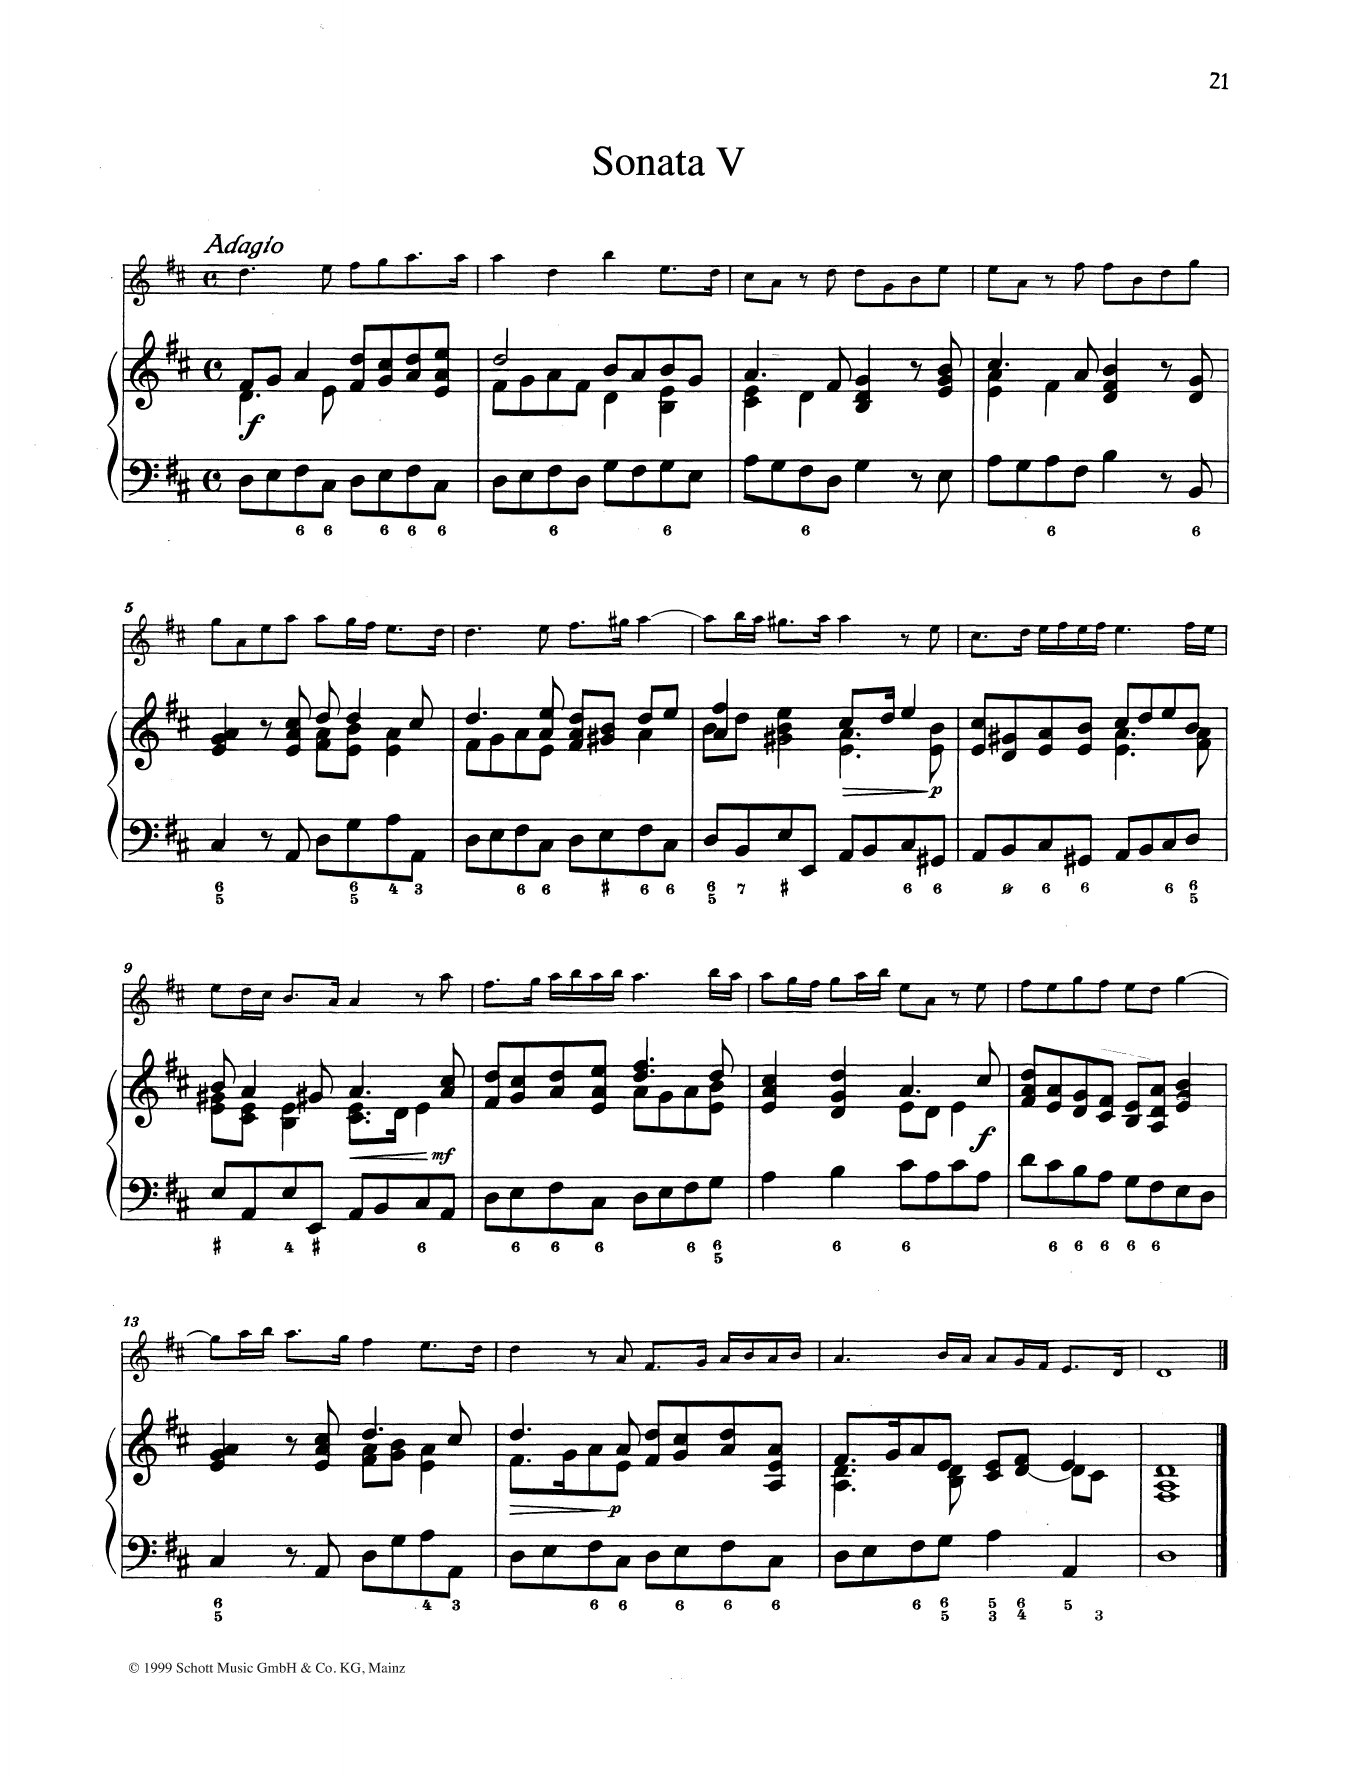 Download Baldassare Galuppi Sonata No. 5 Sheet Music